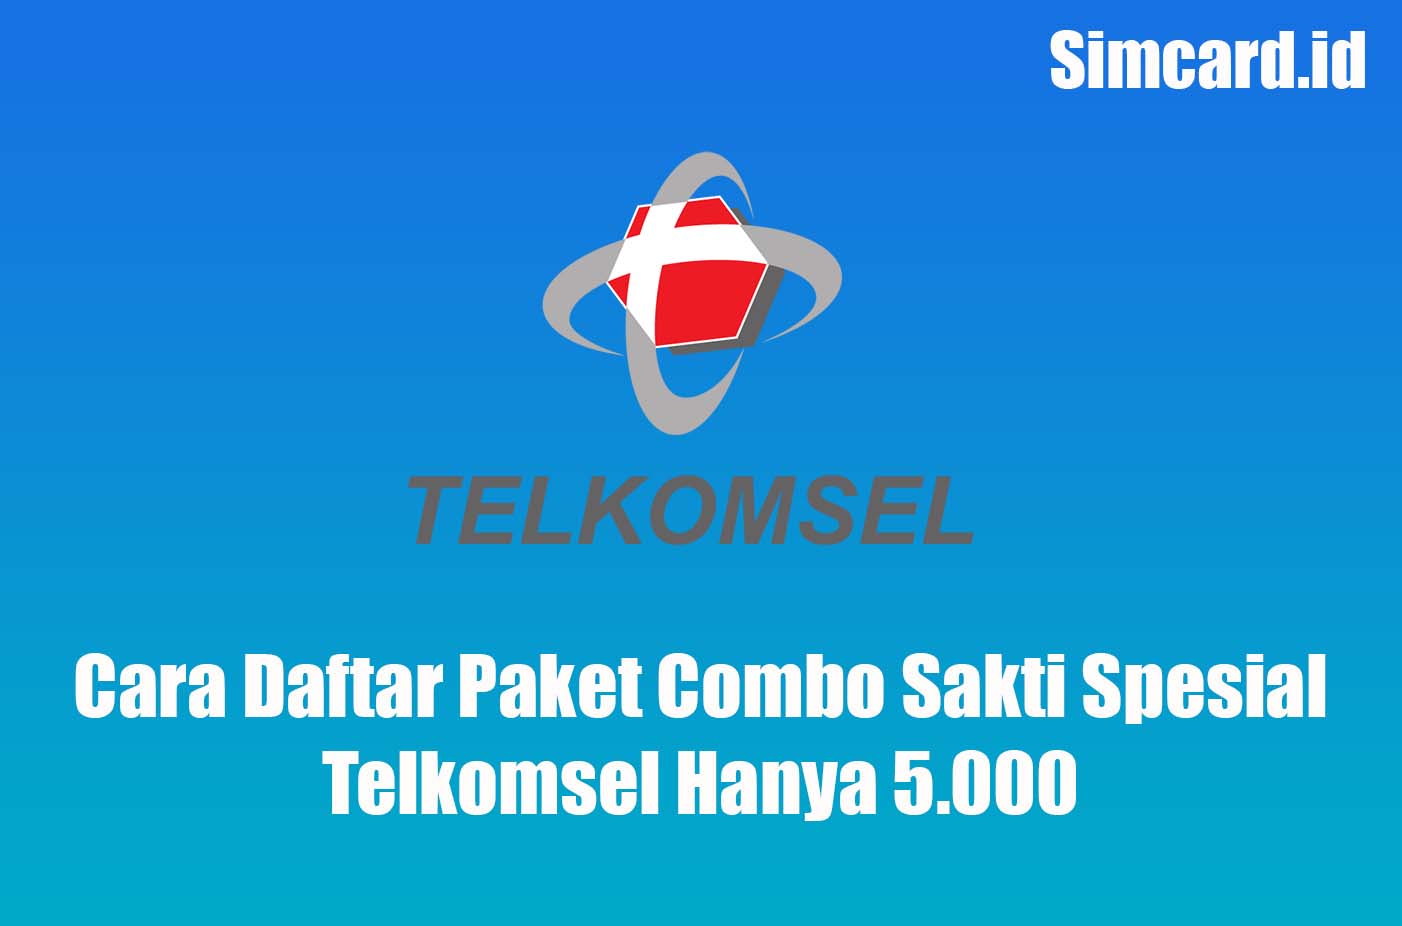 Cara Daftar Paket Combo Sakti Spesial Telkomsel Hanya 5.000